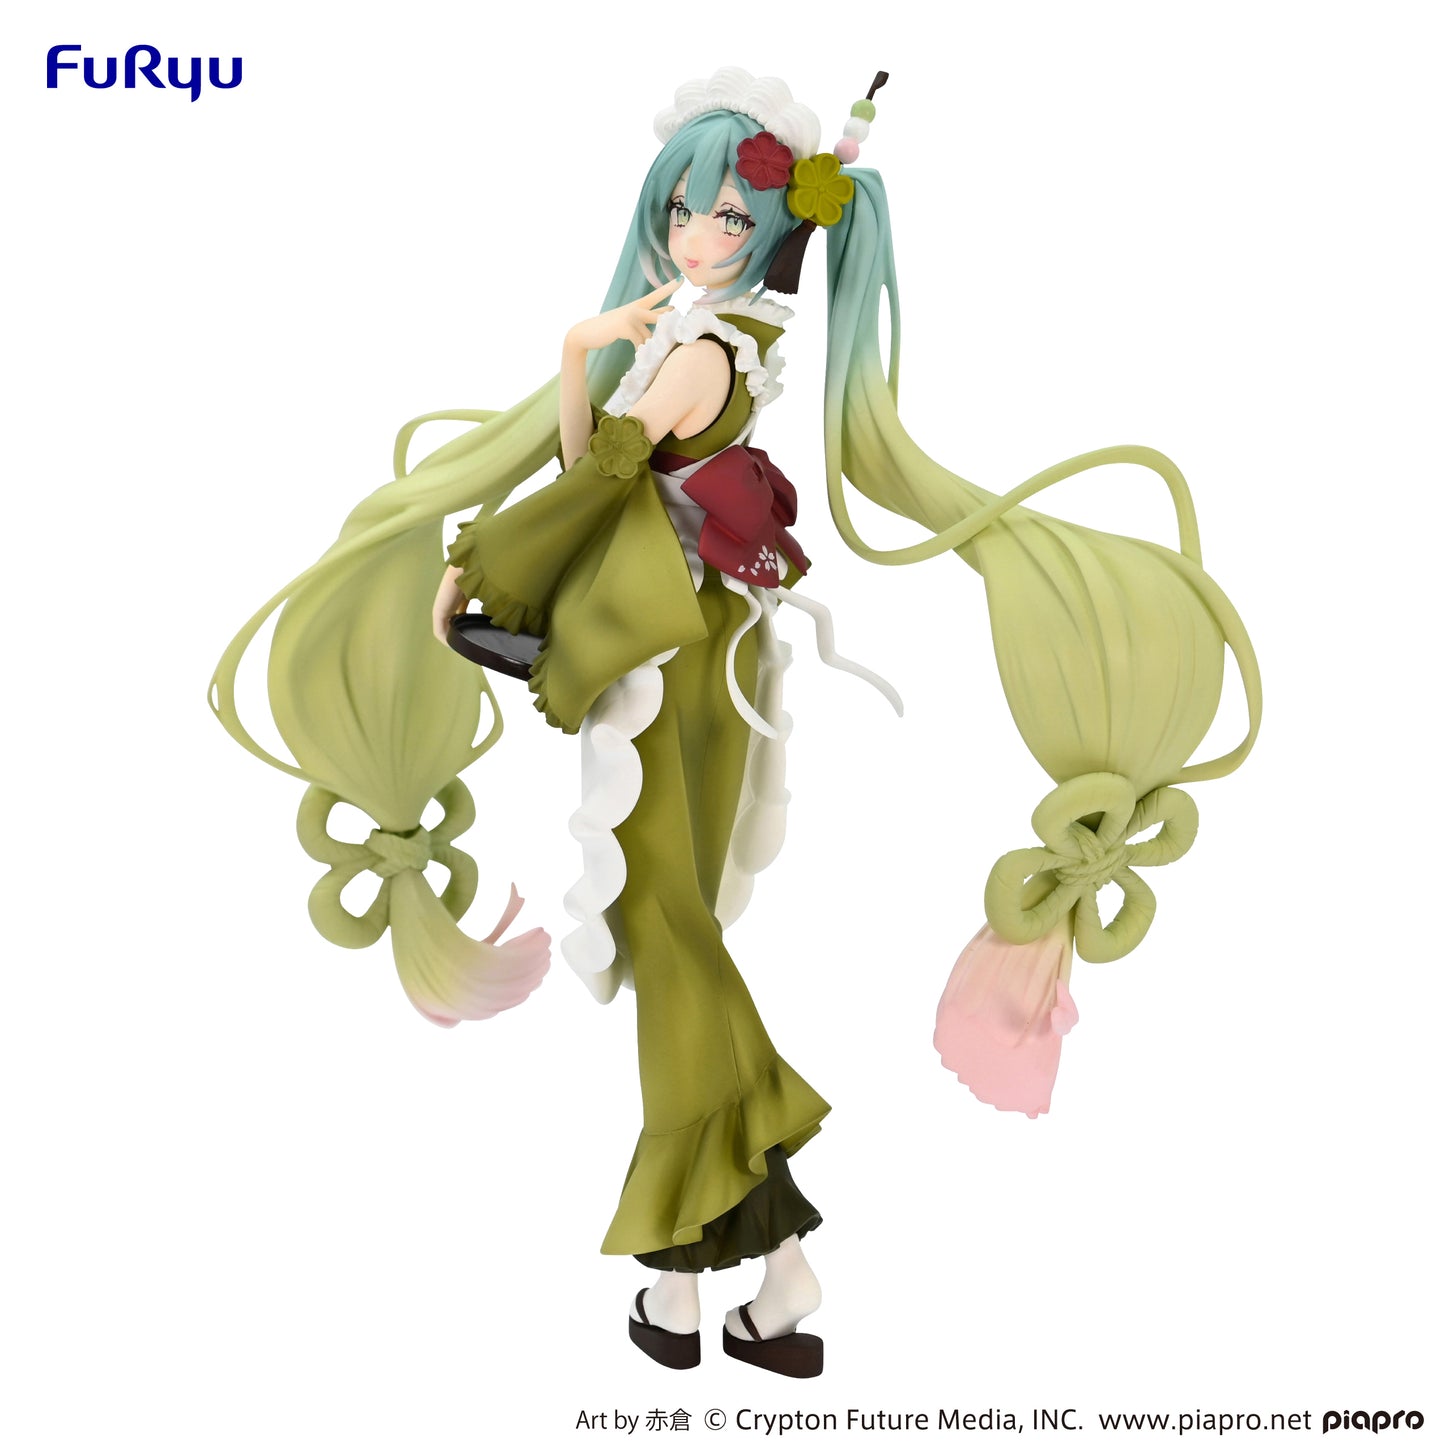 FURYU "Vocaloid" Hatsune Miku Figurines